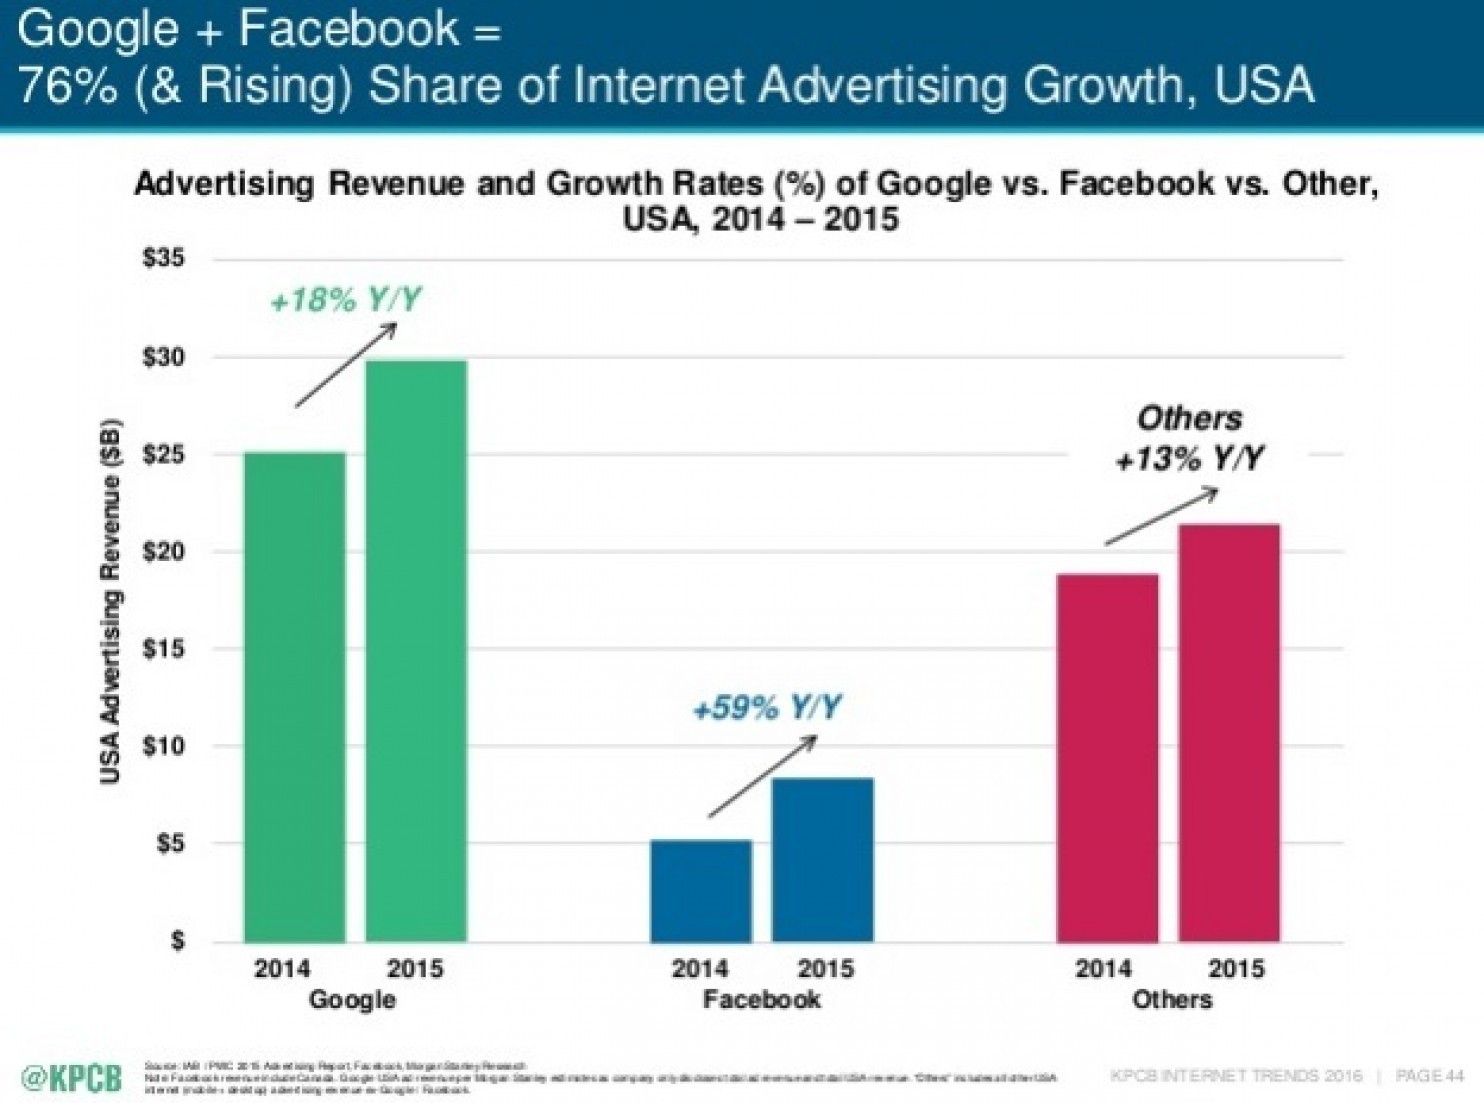 Google vs. Facebook Advertising